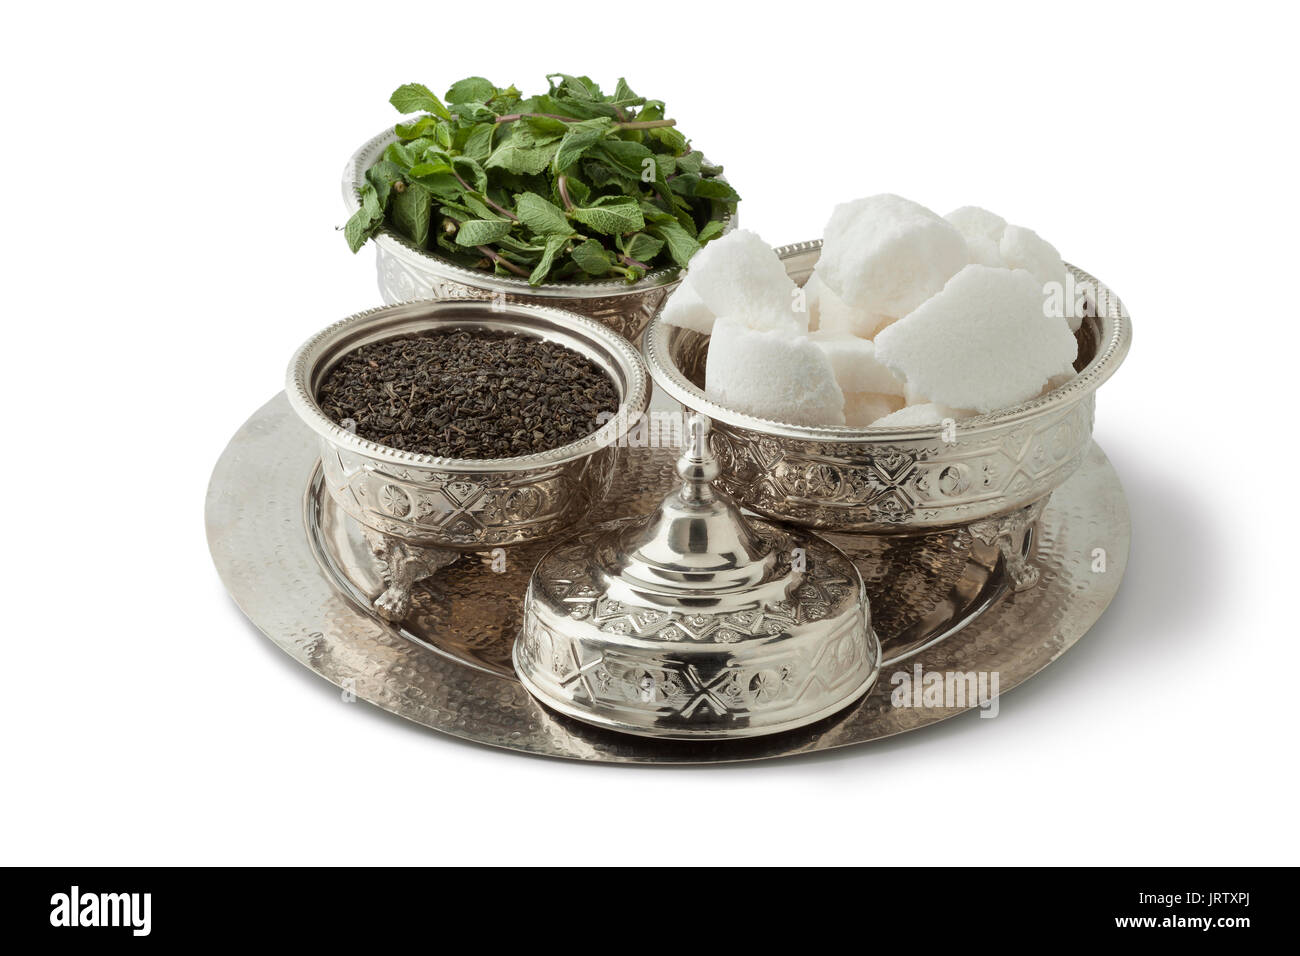 Fête traditionnelle d'argent Service à thé marocain avec le thé, la menthe et le sucre sur fond blanc Banque D'Images